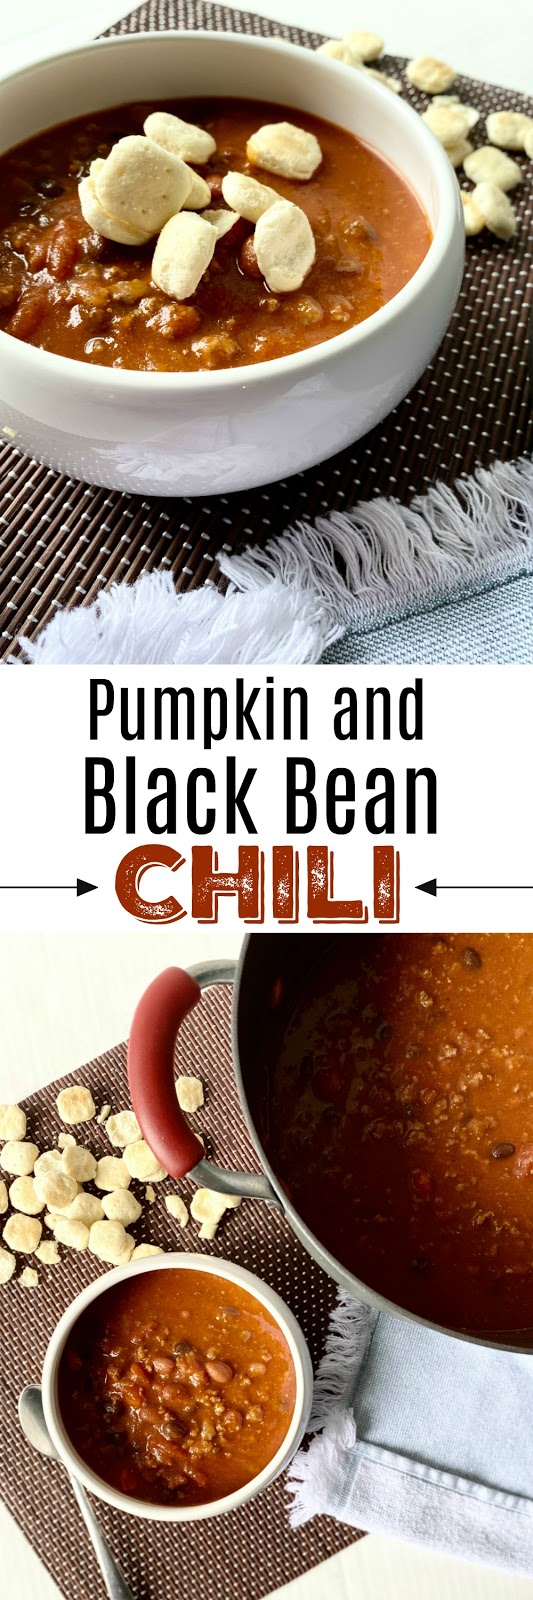 pumpkin and black bean chili